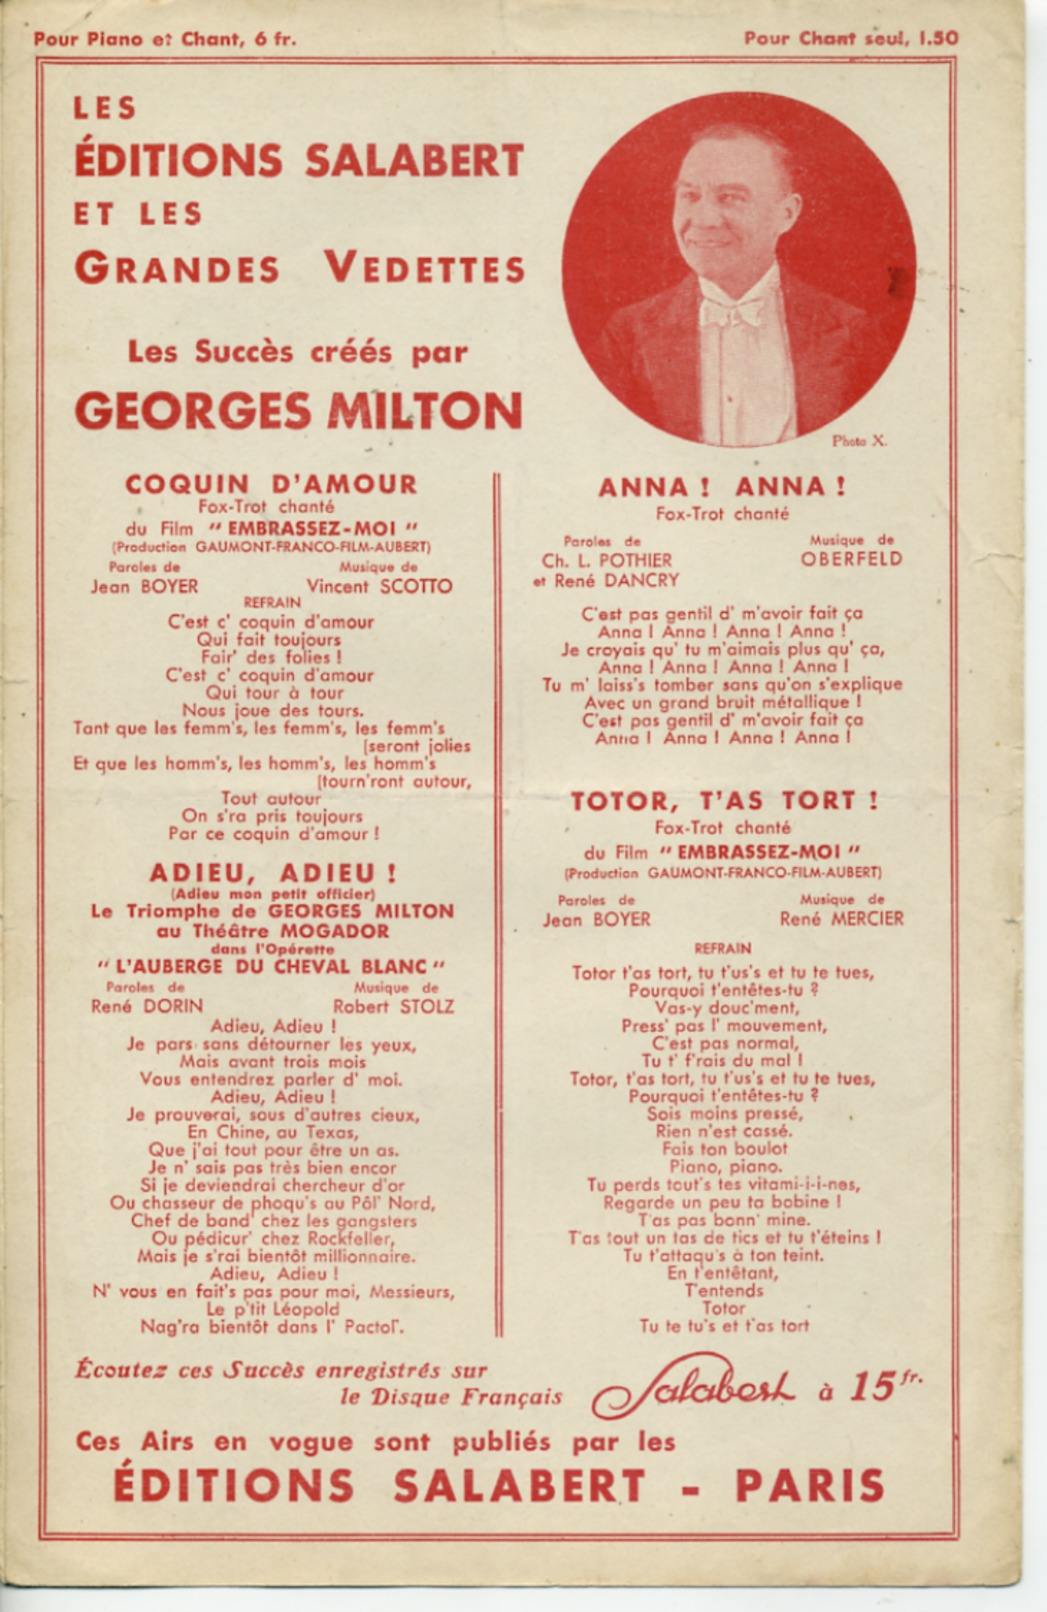 CAF CONC CHAMPIONNAT BELOTTE PARIS-SOIR PARTITION LE CHAMPION LA BELOTE MILTON YVAIN JACK CAZOL CHANSONNIER 1924 - Film Music